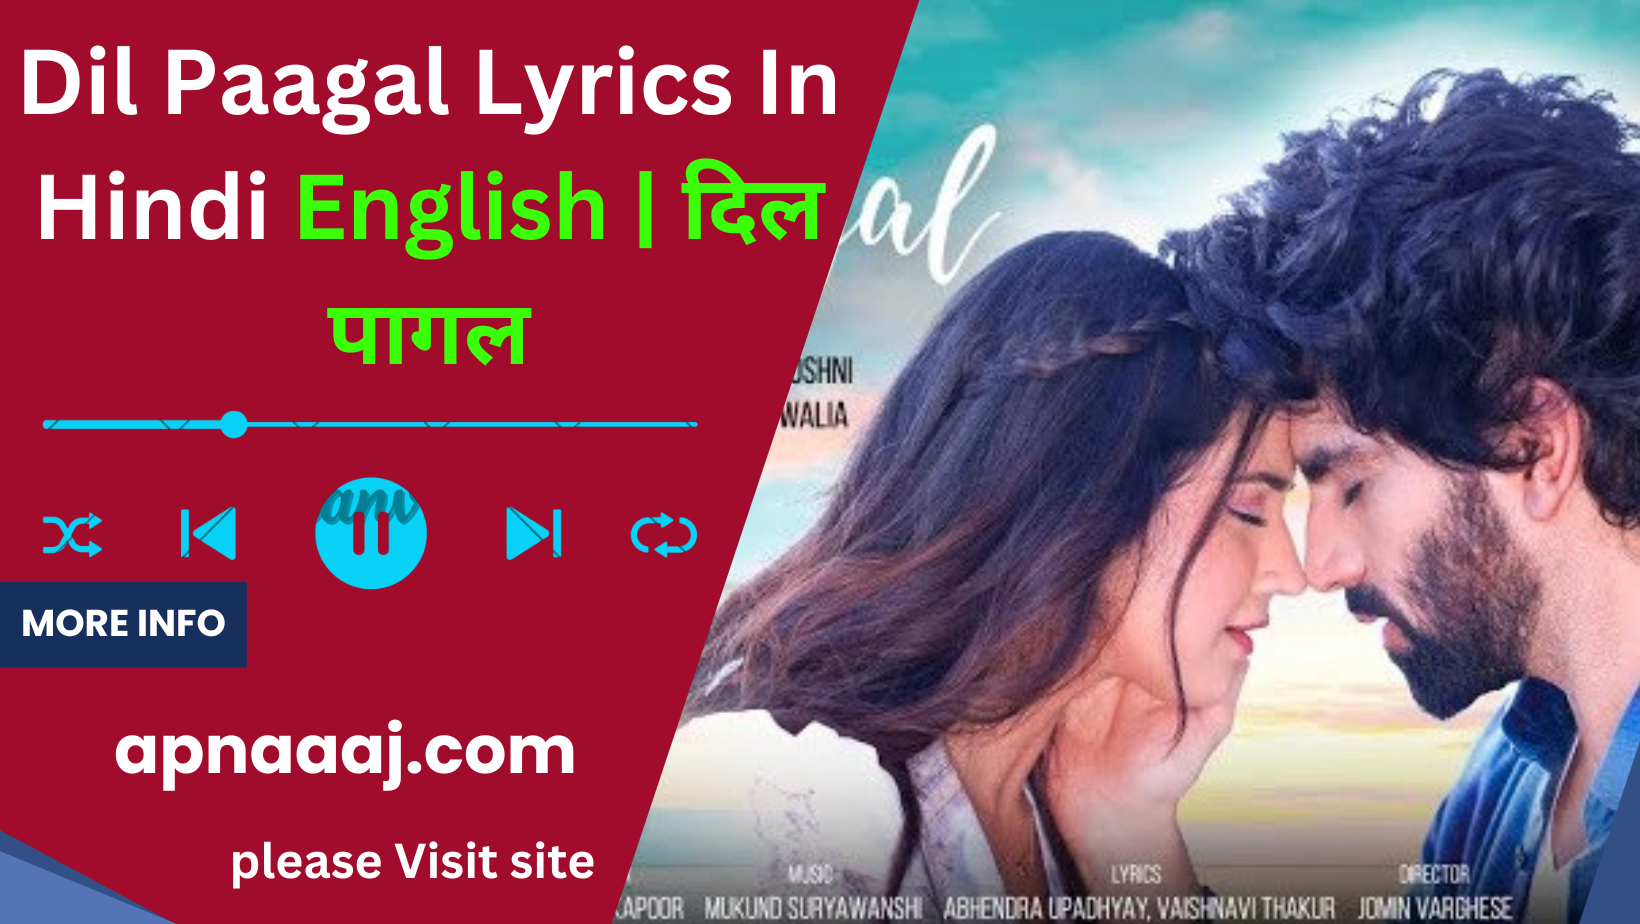 Dil Paagal Lyrics In Hindi English